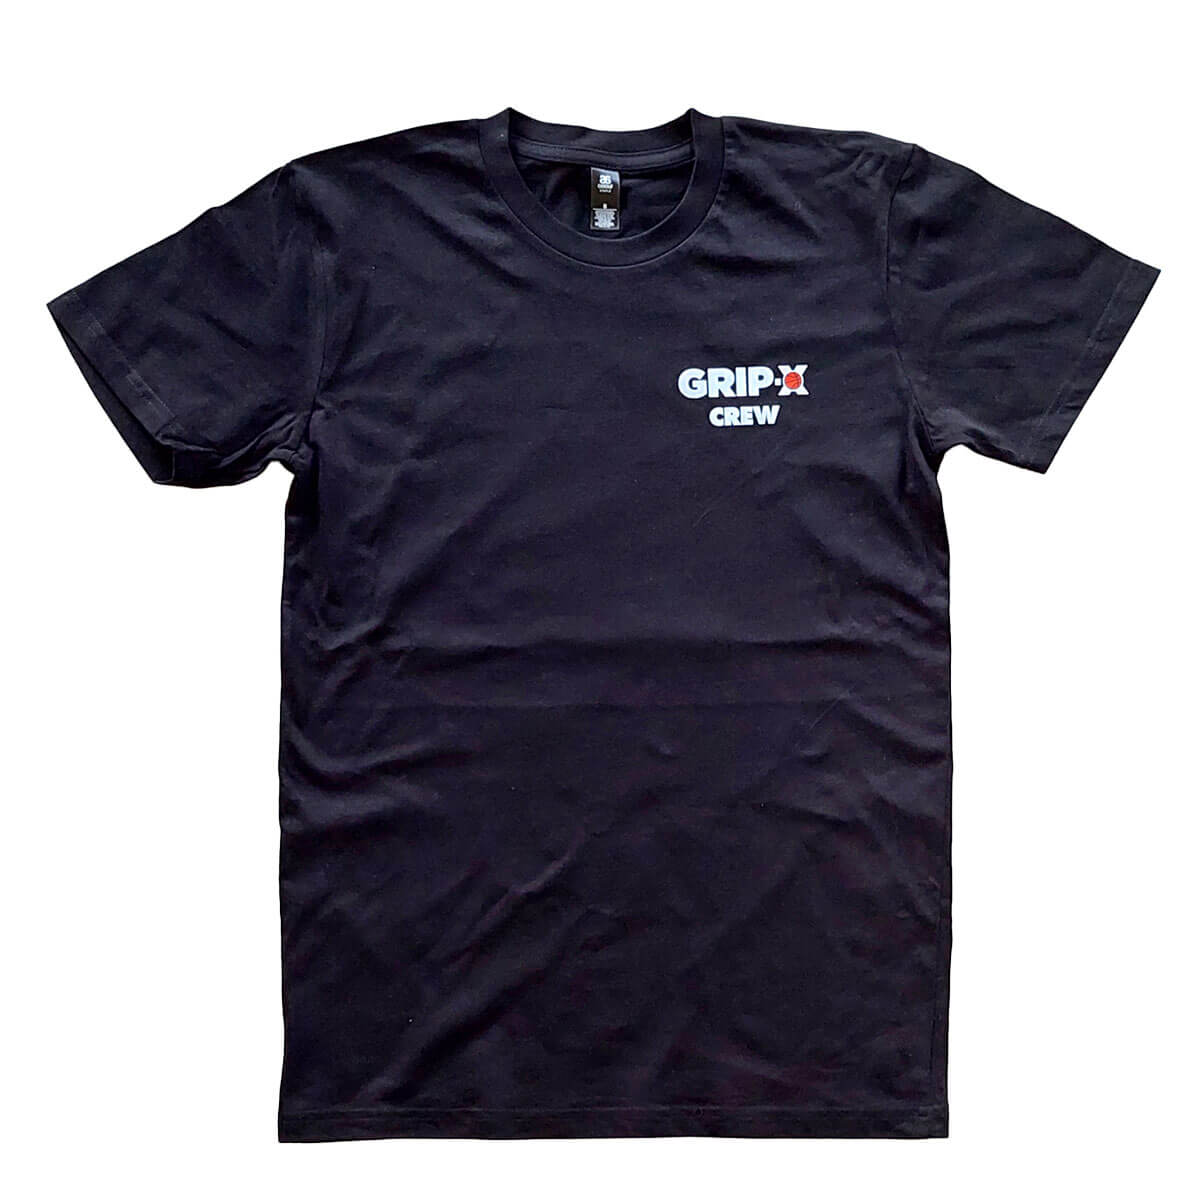 GRIP-X Crew T-shirt OG - Grip X